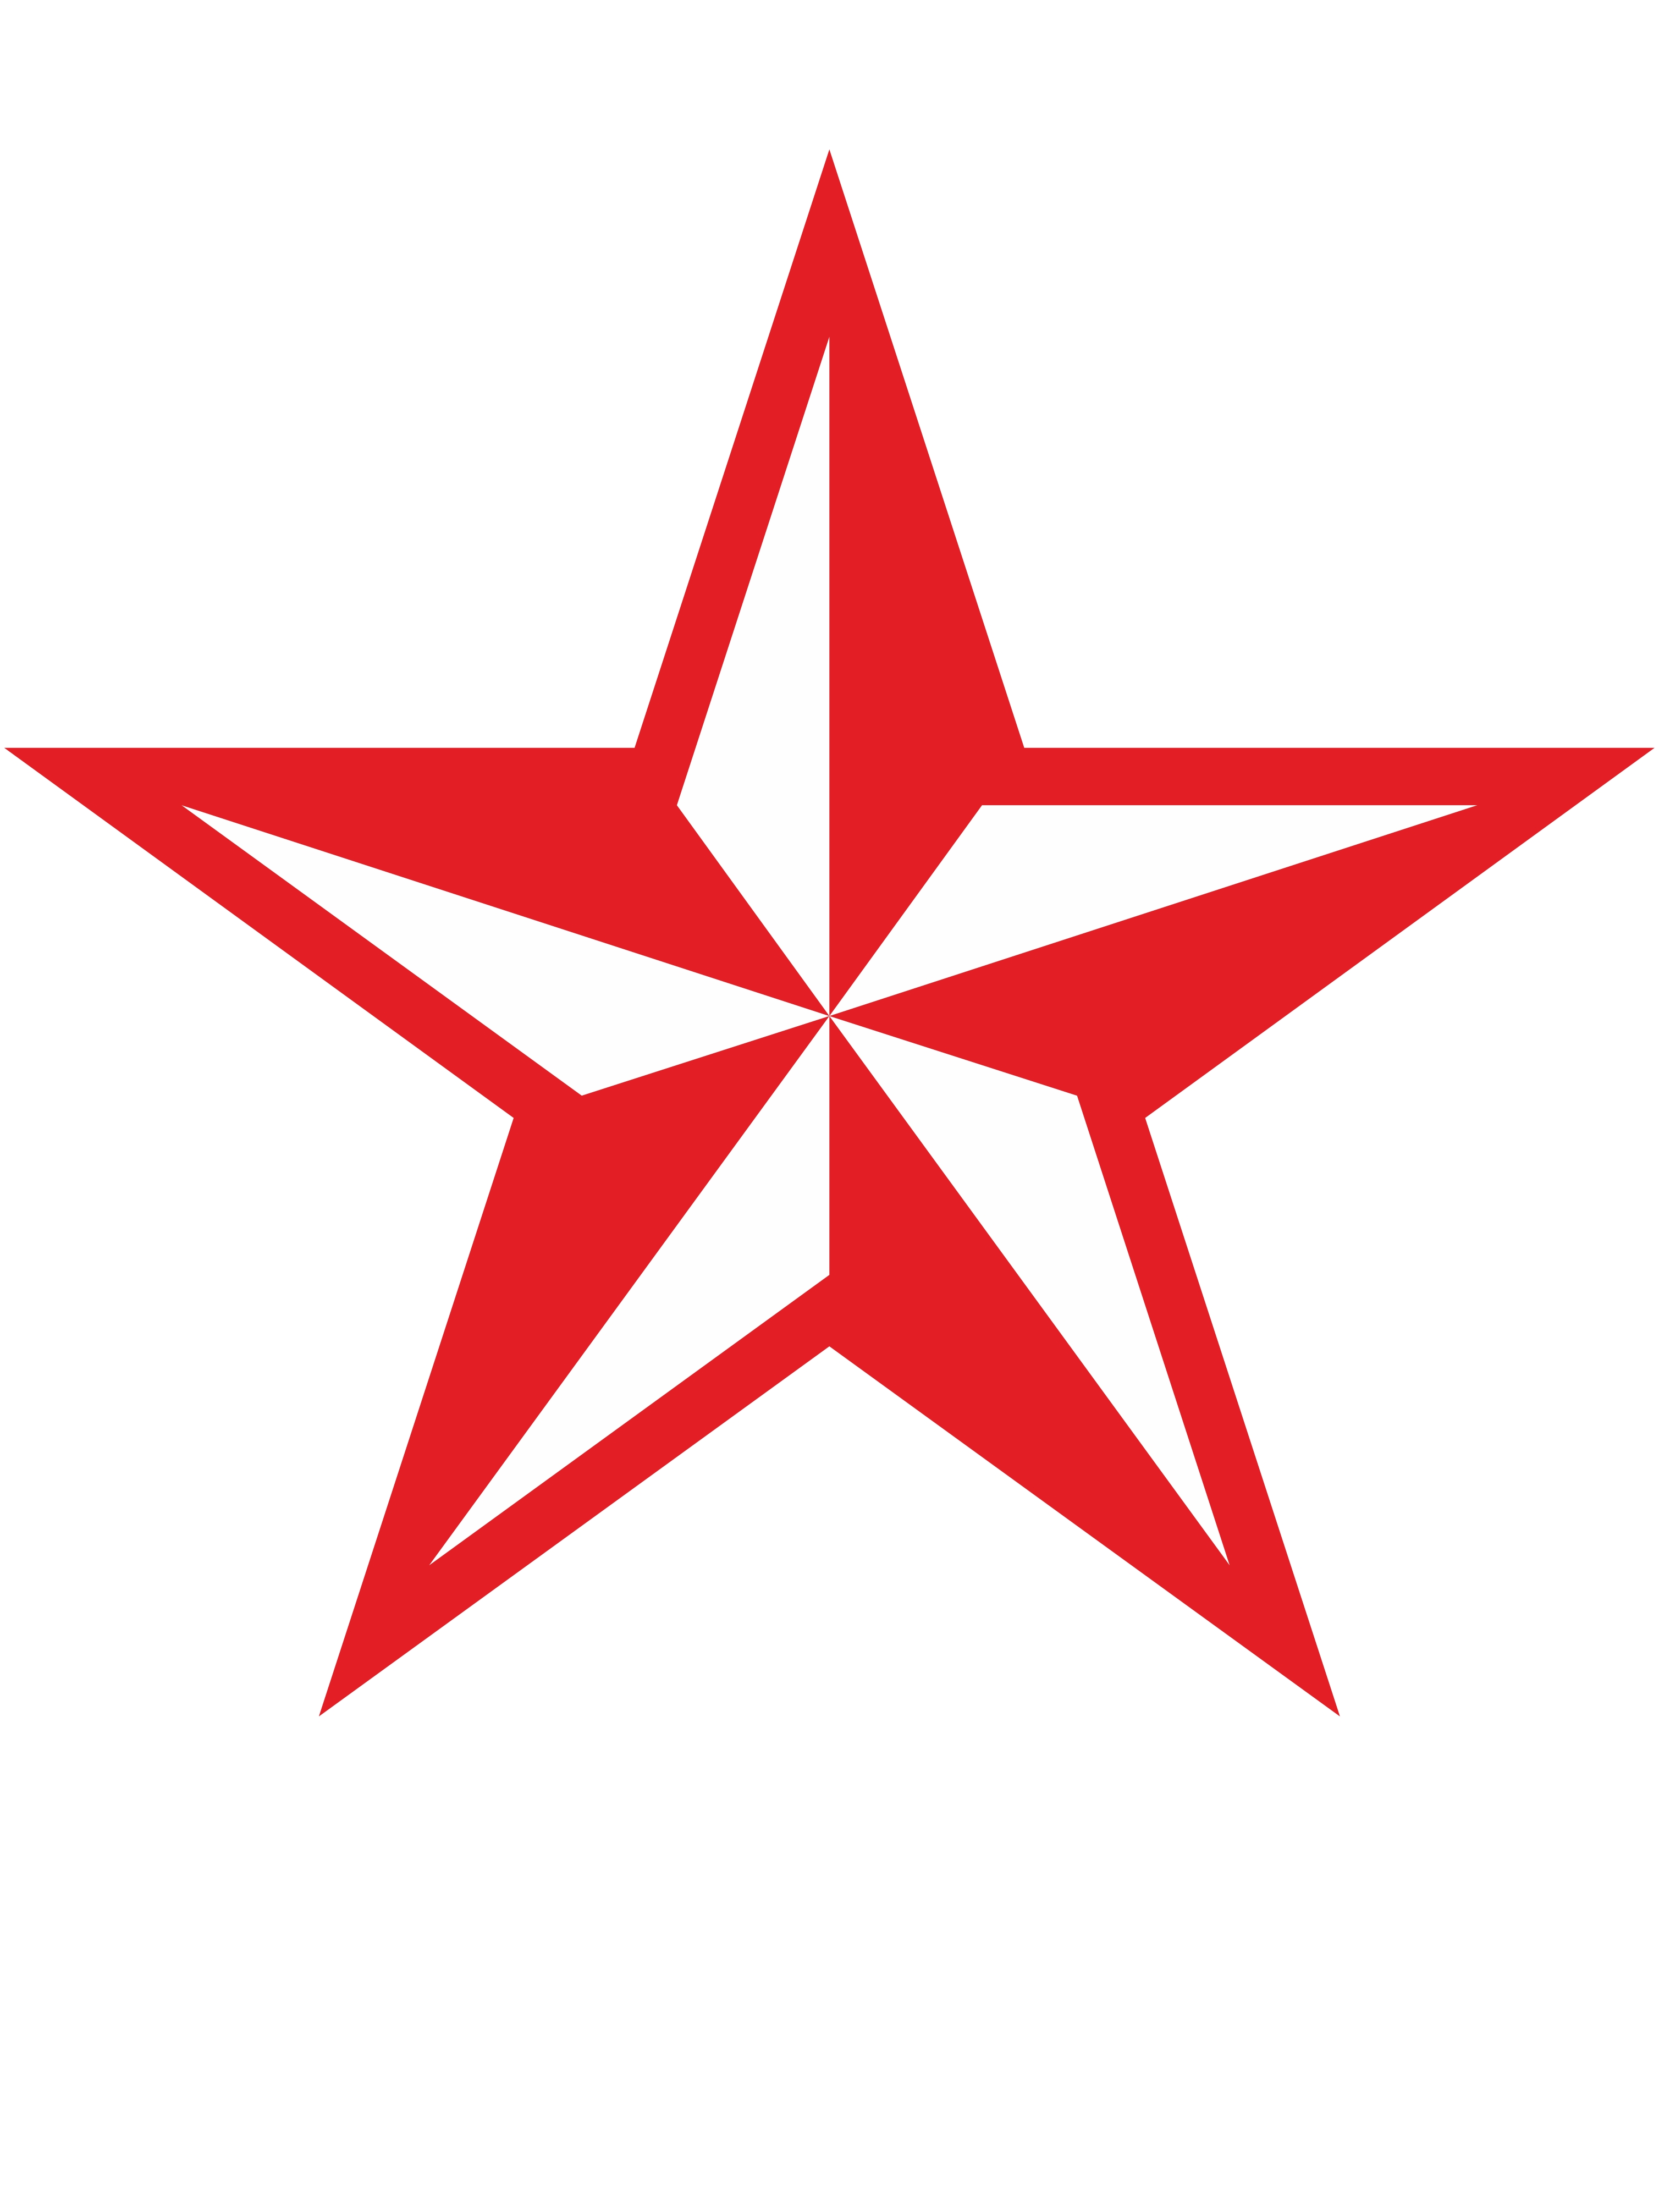 Македонская звезда эскиз